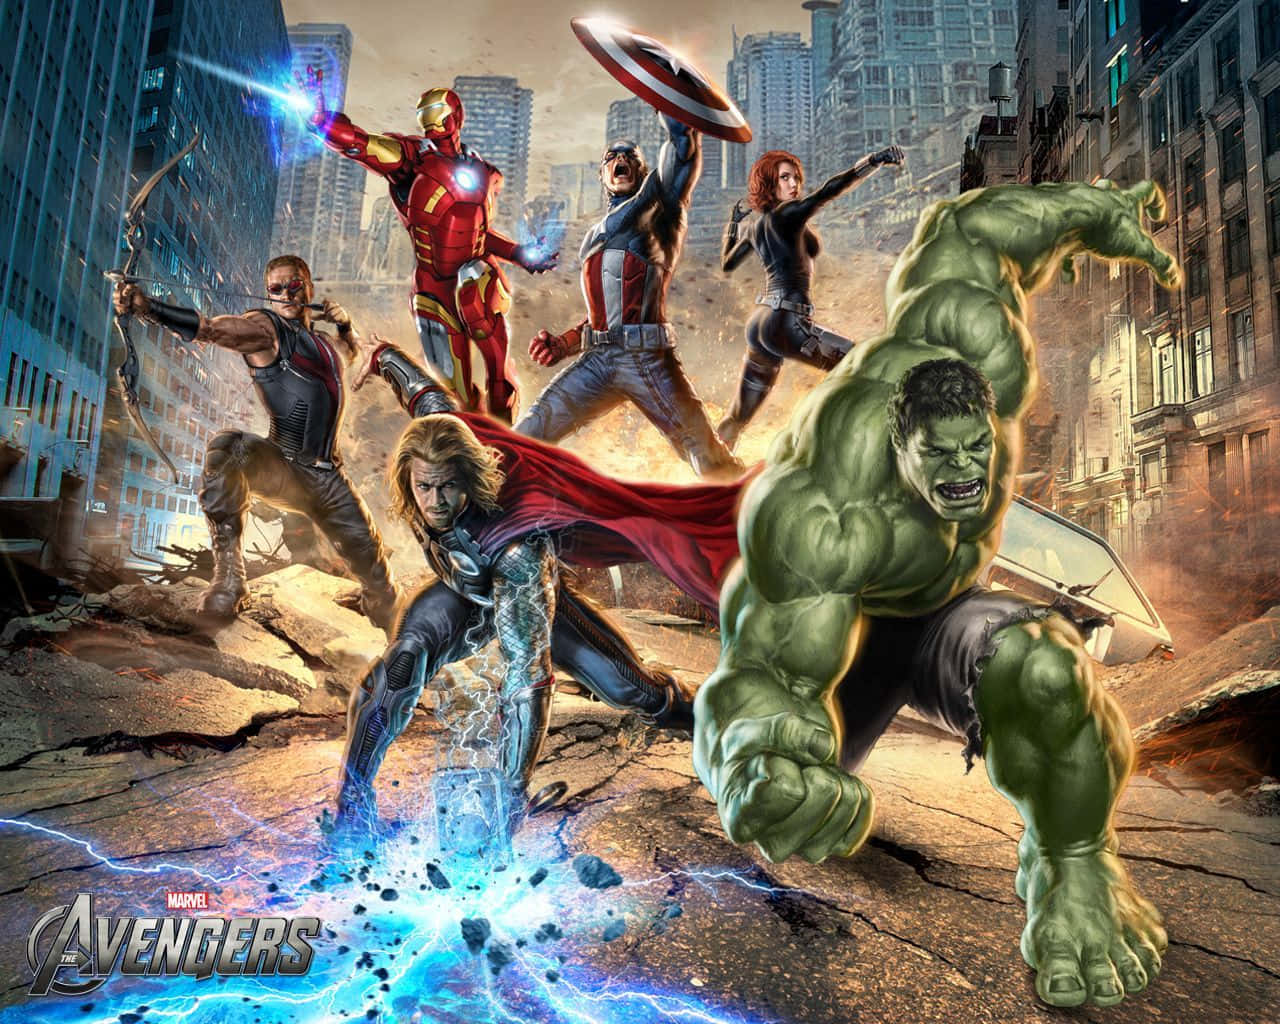 Marvelbaggrundsscene Fra Slaget Om New York I 2012.